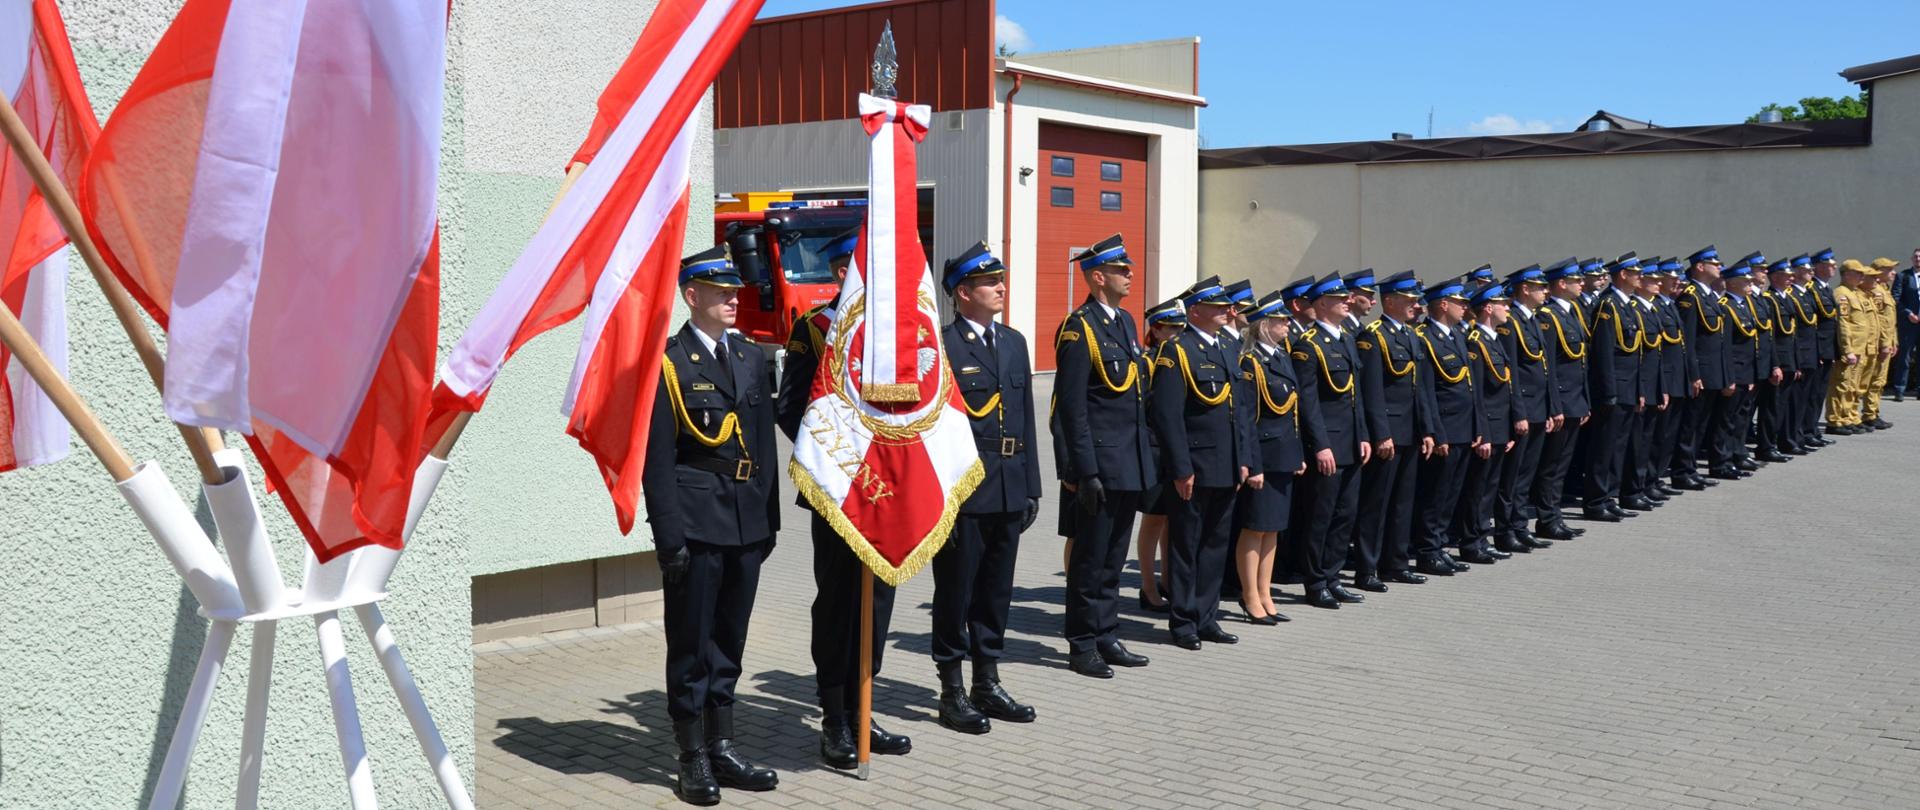 Strażacy Komendy ustawieni w szeregu, galowy ubiór, na pierwszym planie flagi państwowe i poczet sztandarowy